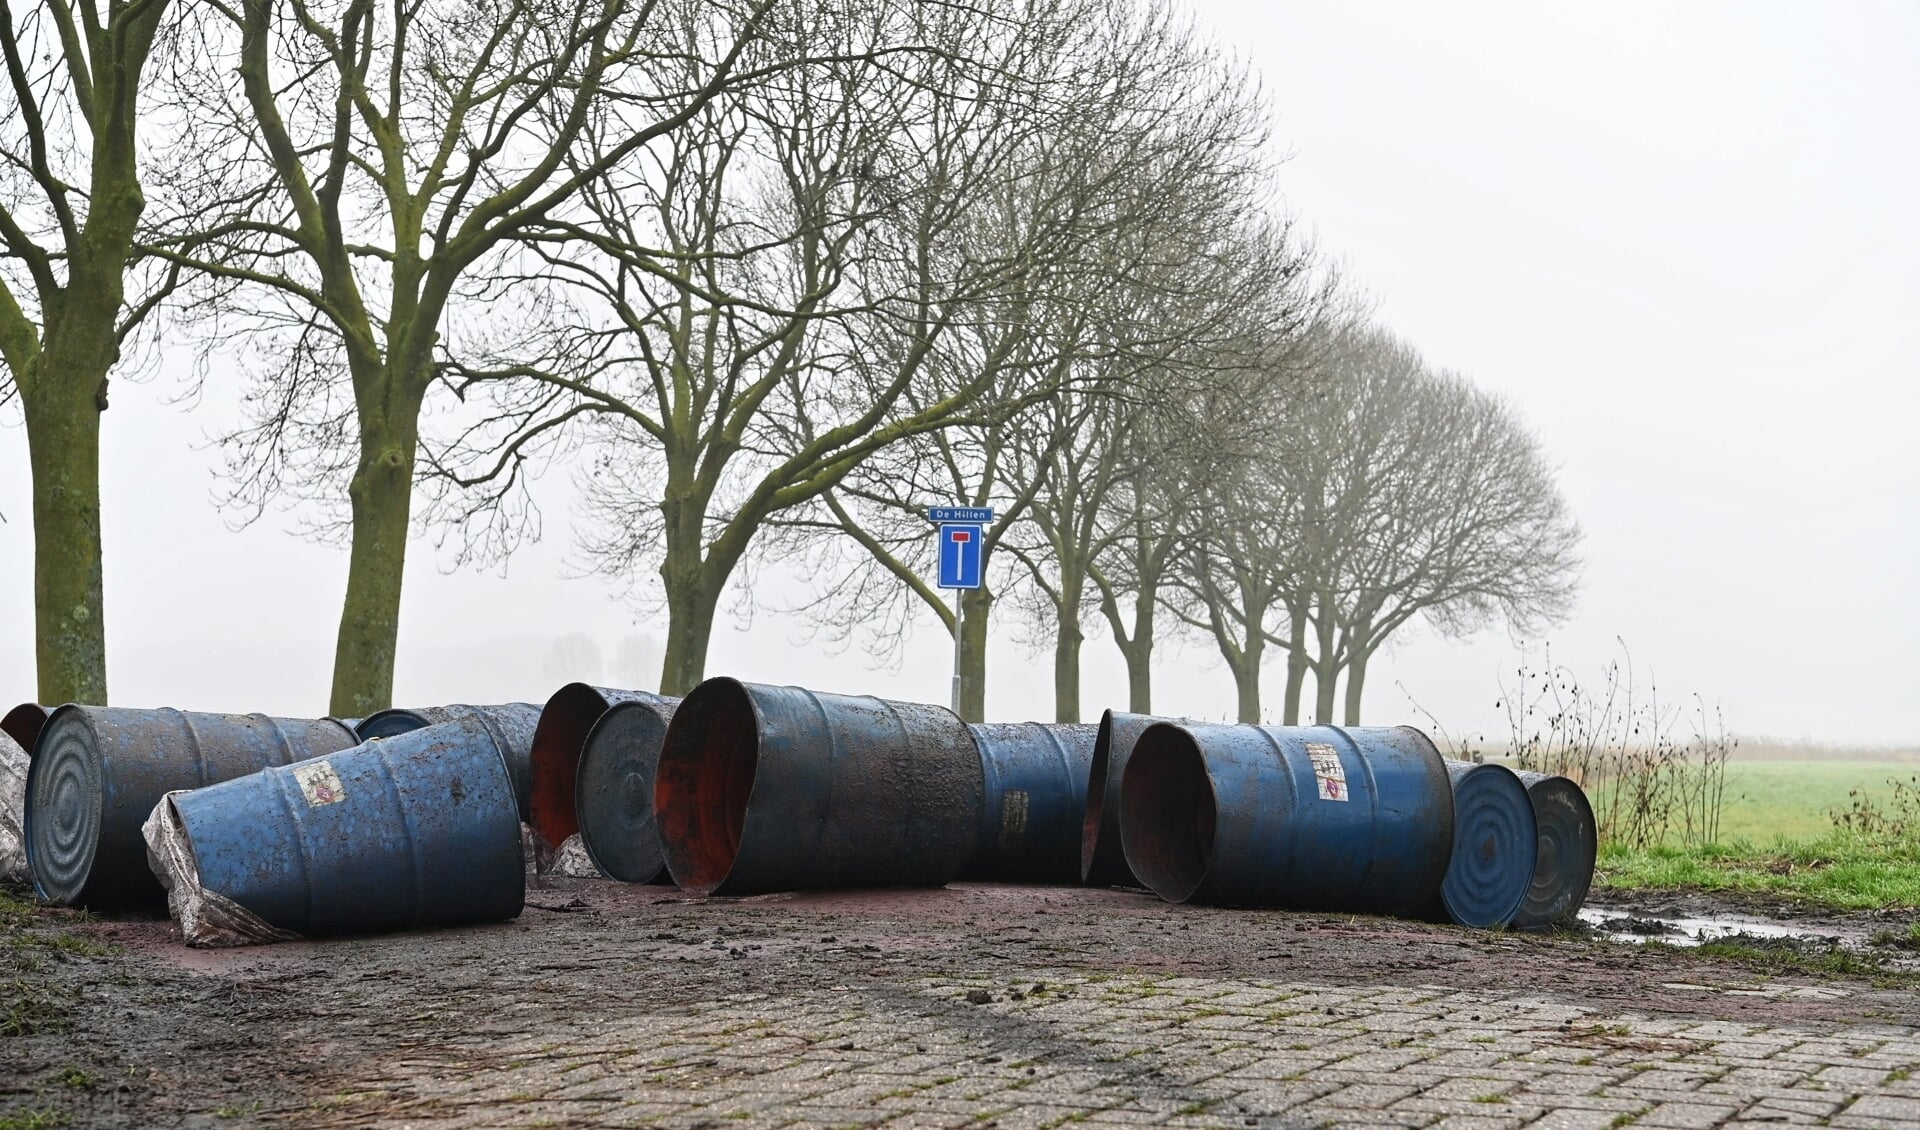 Drugsdumping in Prinsenbeek, begin 2020